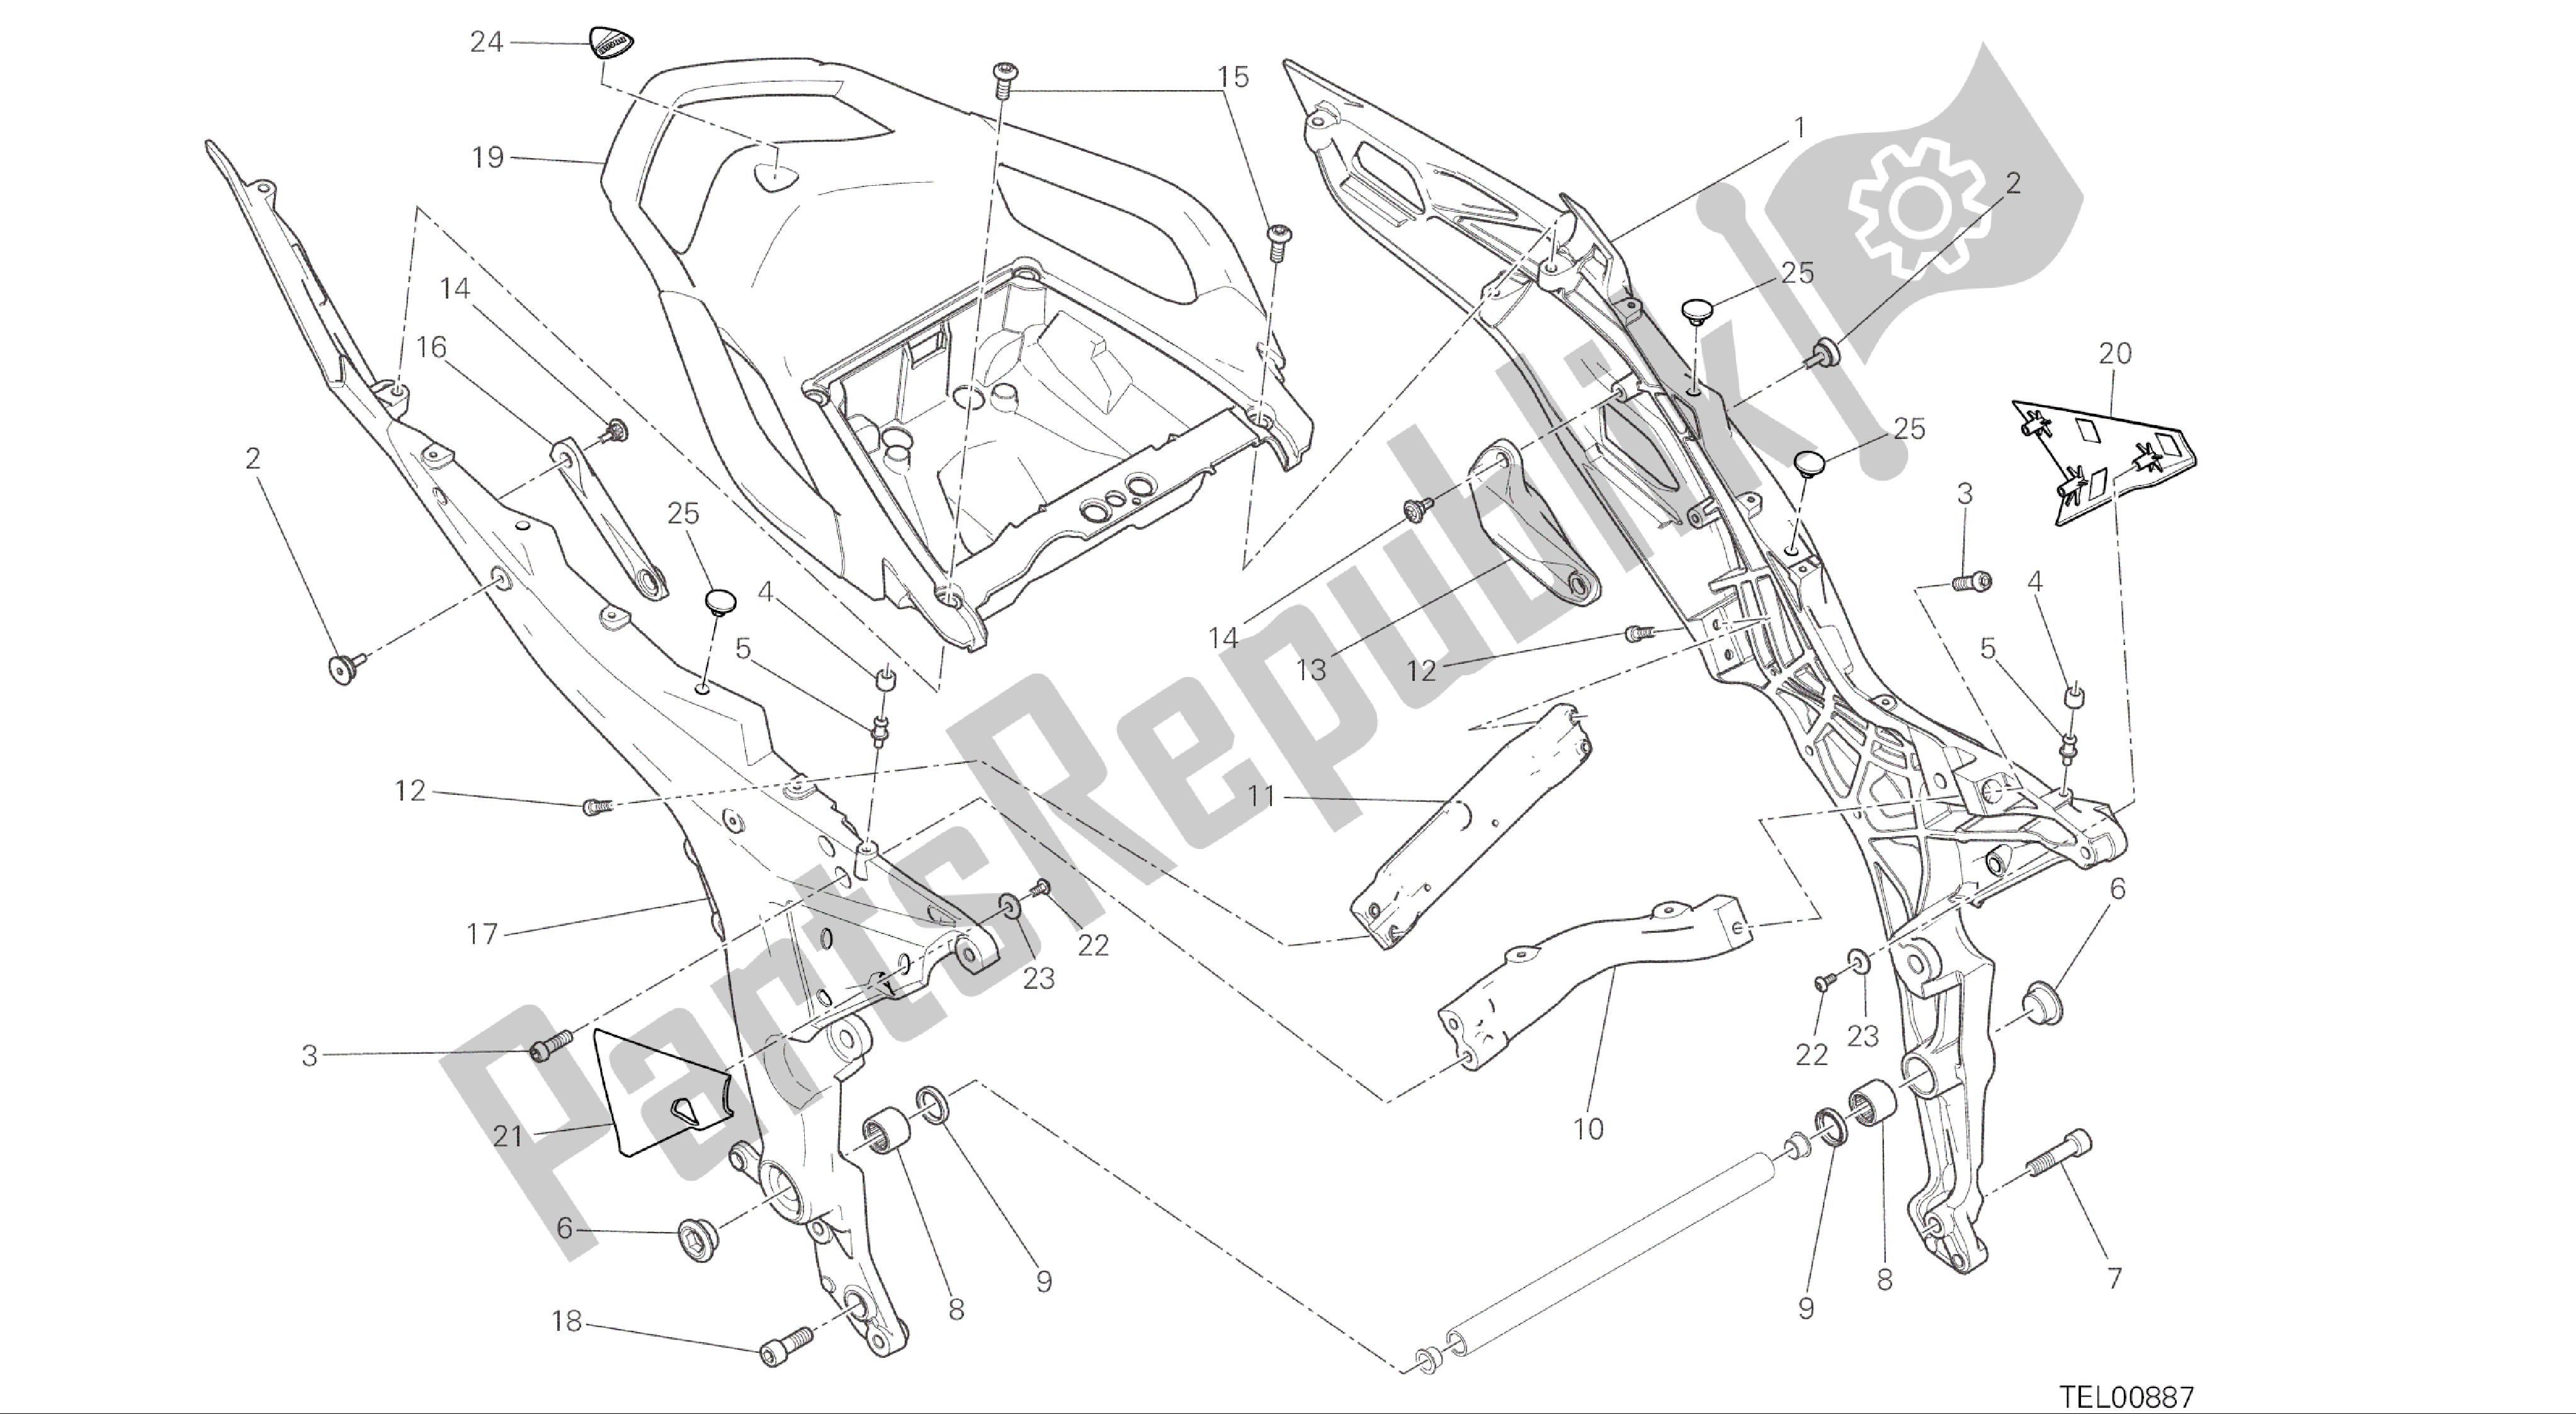 Tutte le parti per il Disegno 027 - Telaio Posteriore Comp. [mod: Ms1200; Xst: Aus, Eur, Fra, Jap] Frame Di Gruppo del Ducati Multistrada 1200 2015